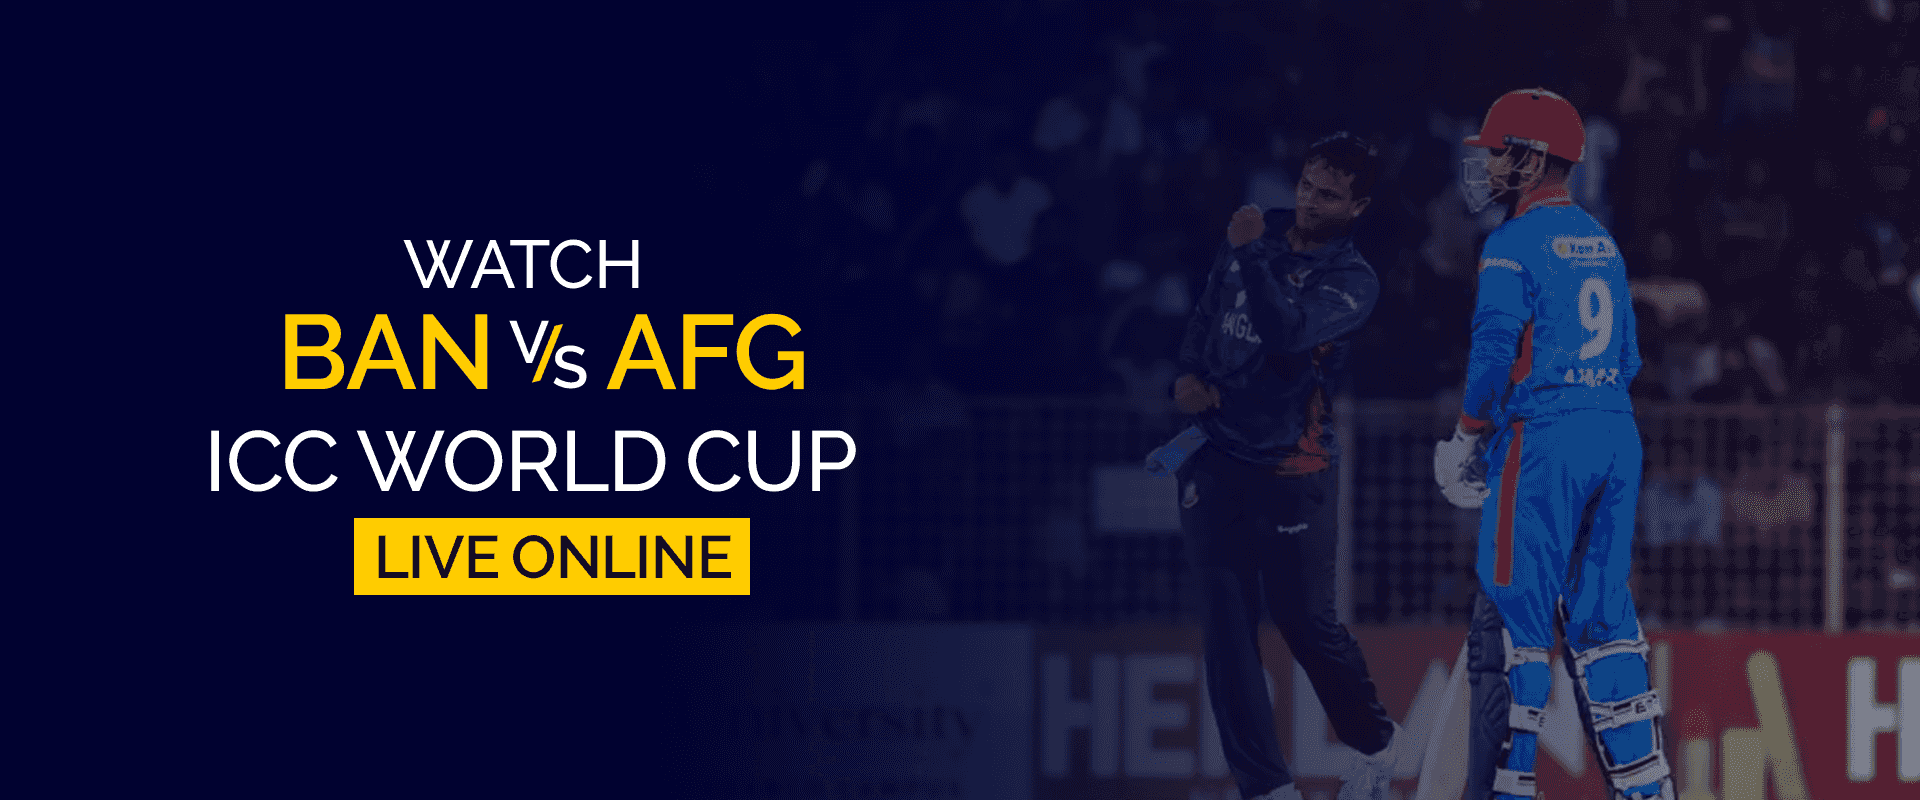 Se BAN vs AFG ICC World Cup live online